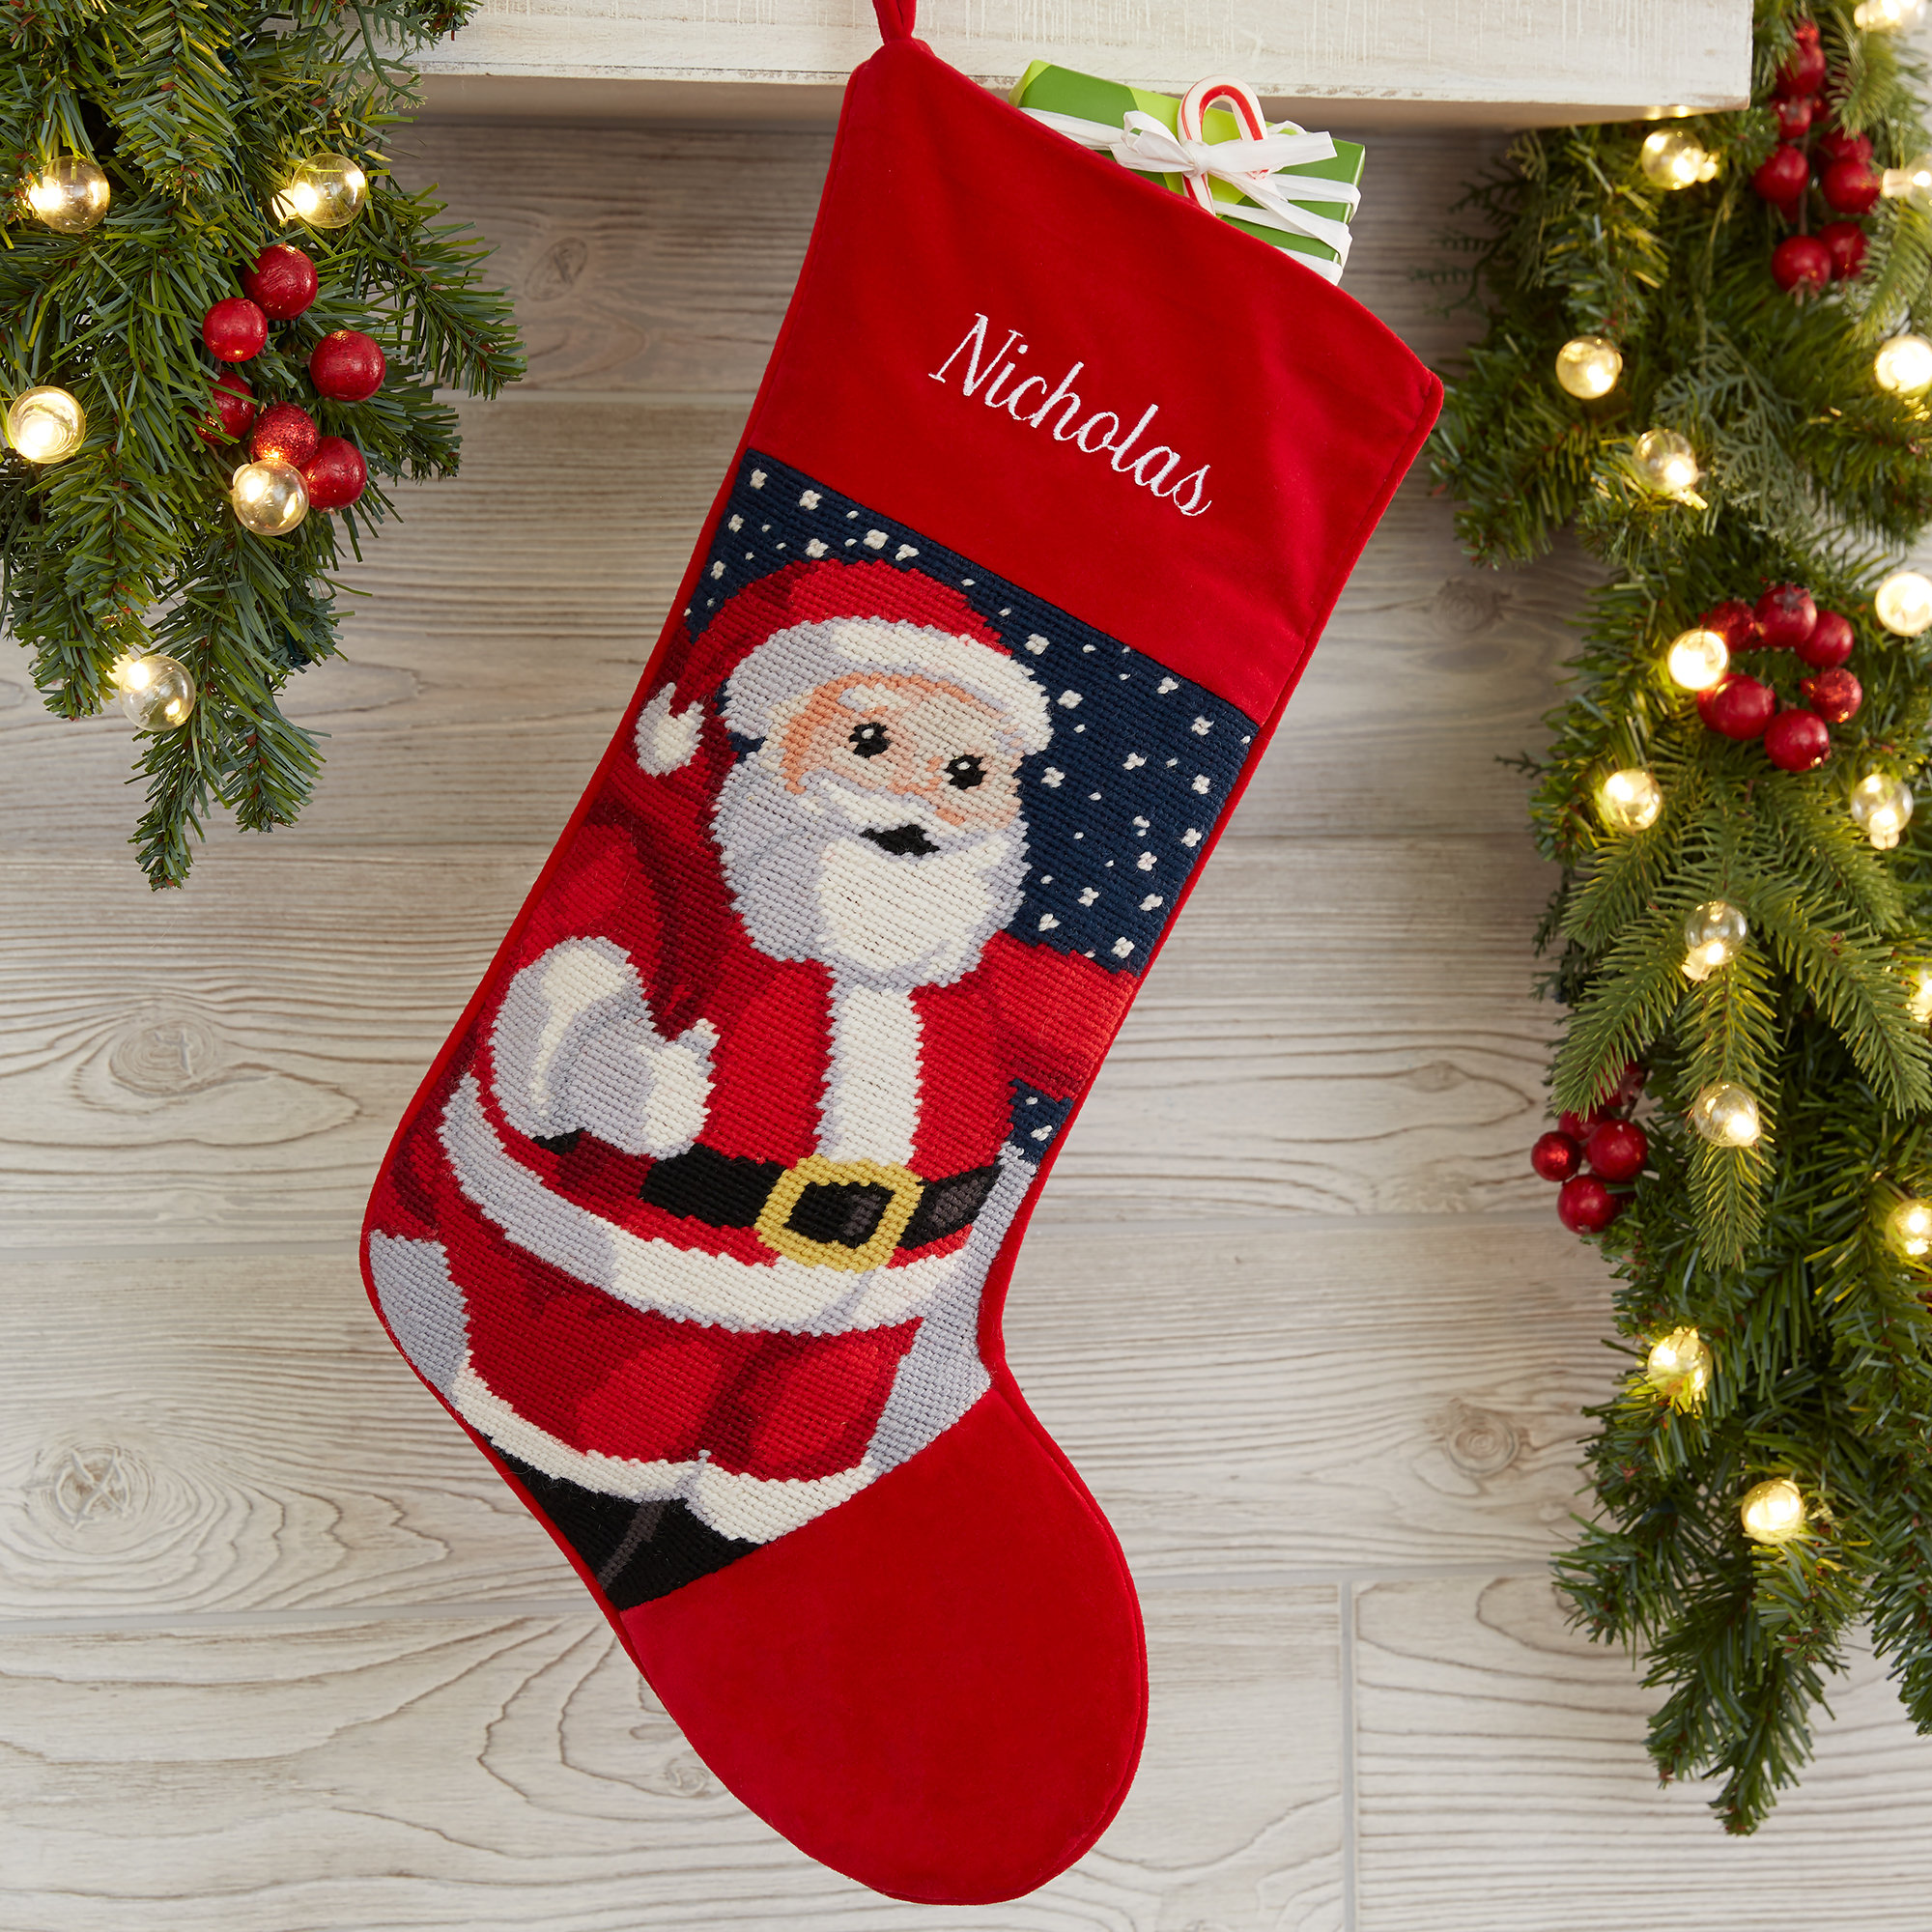 Santa Personalized Needlepoint Stocking